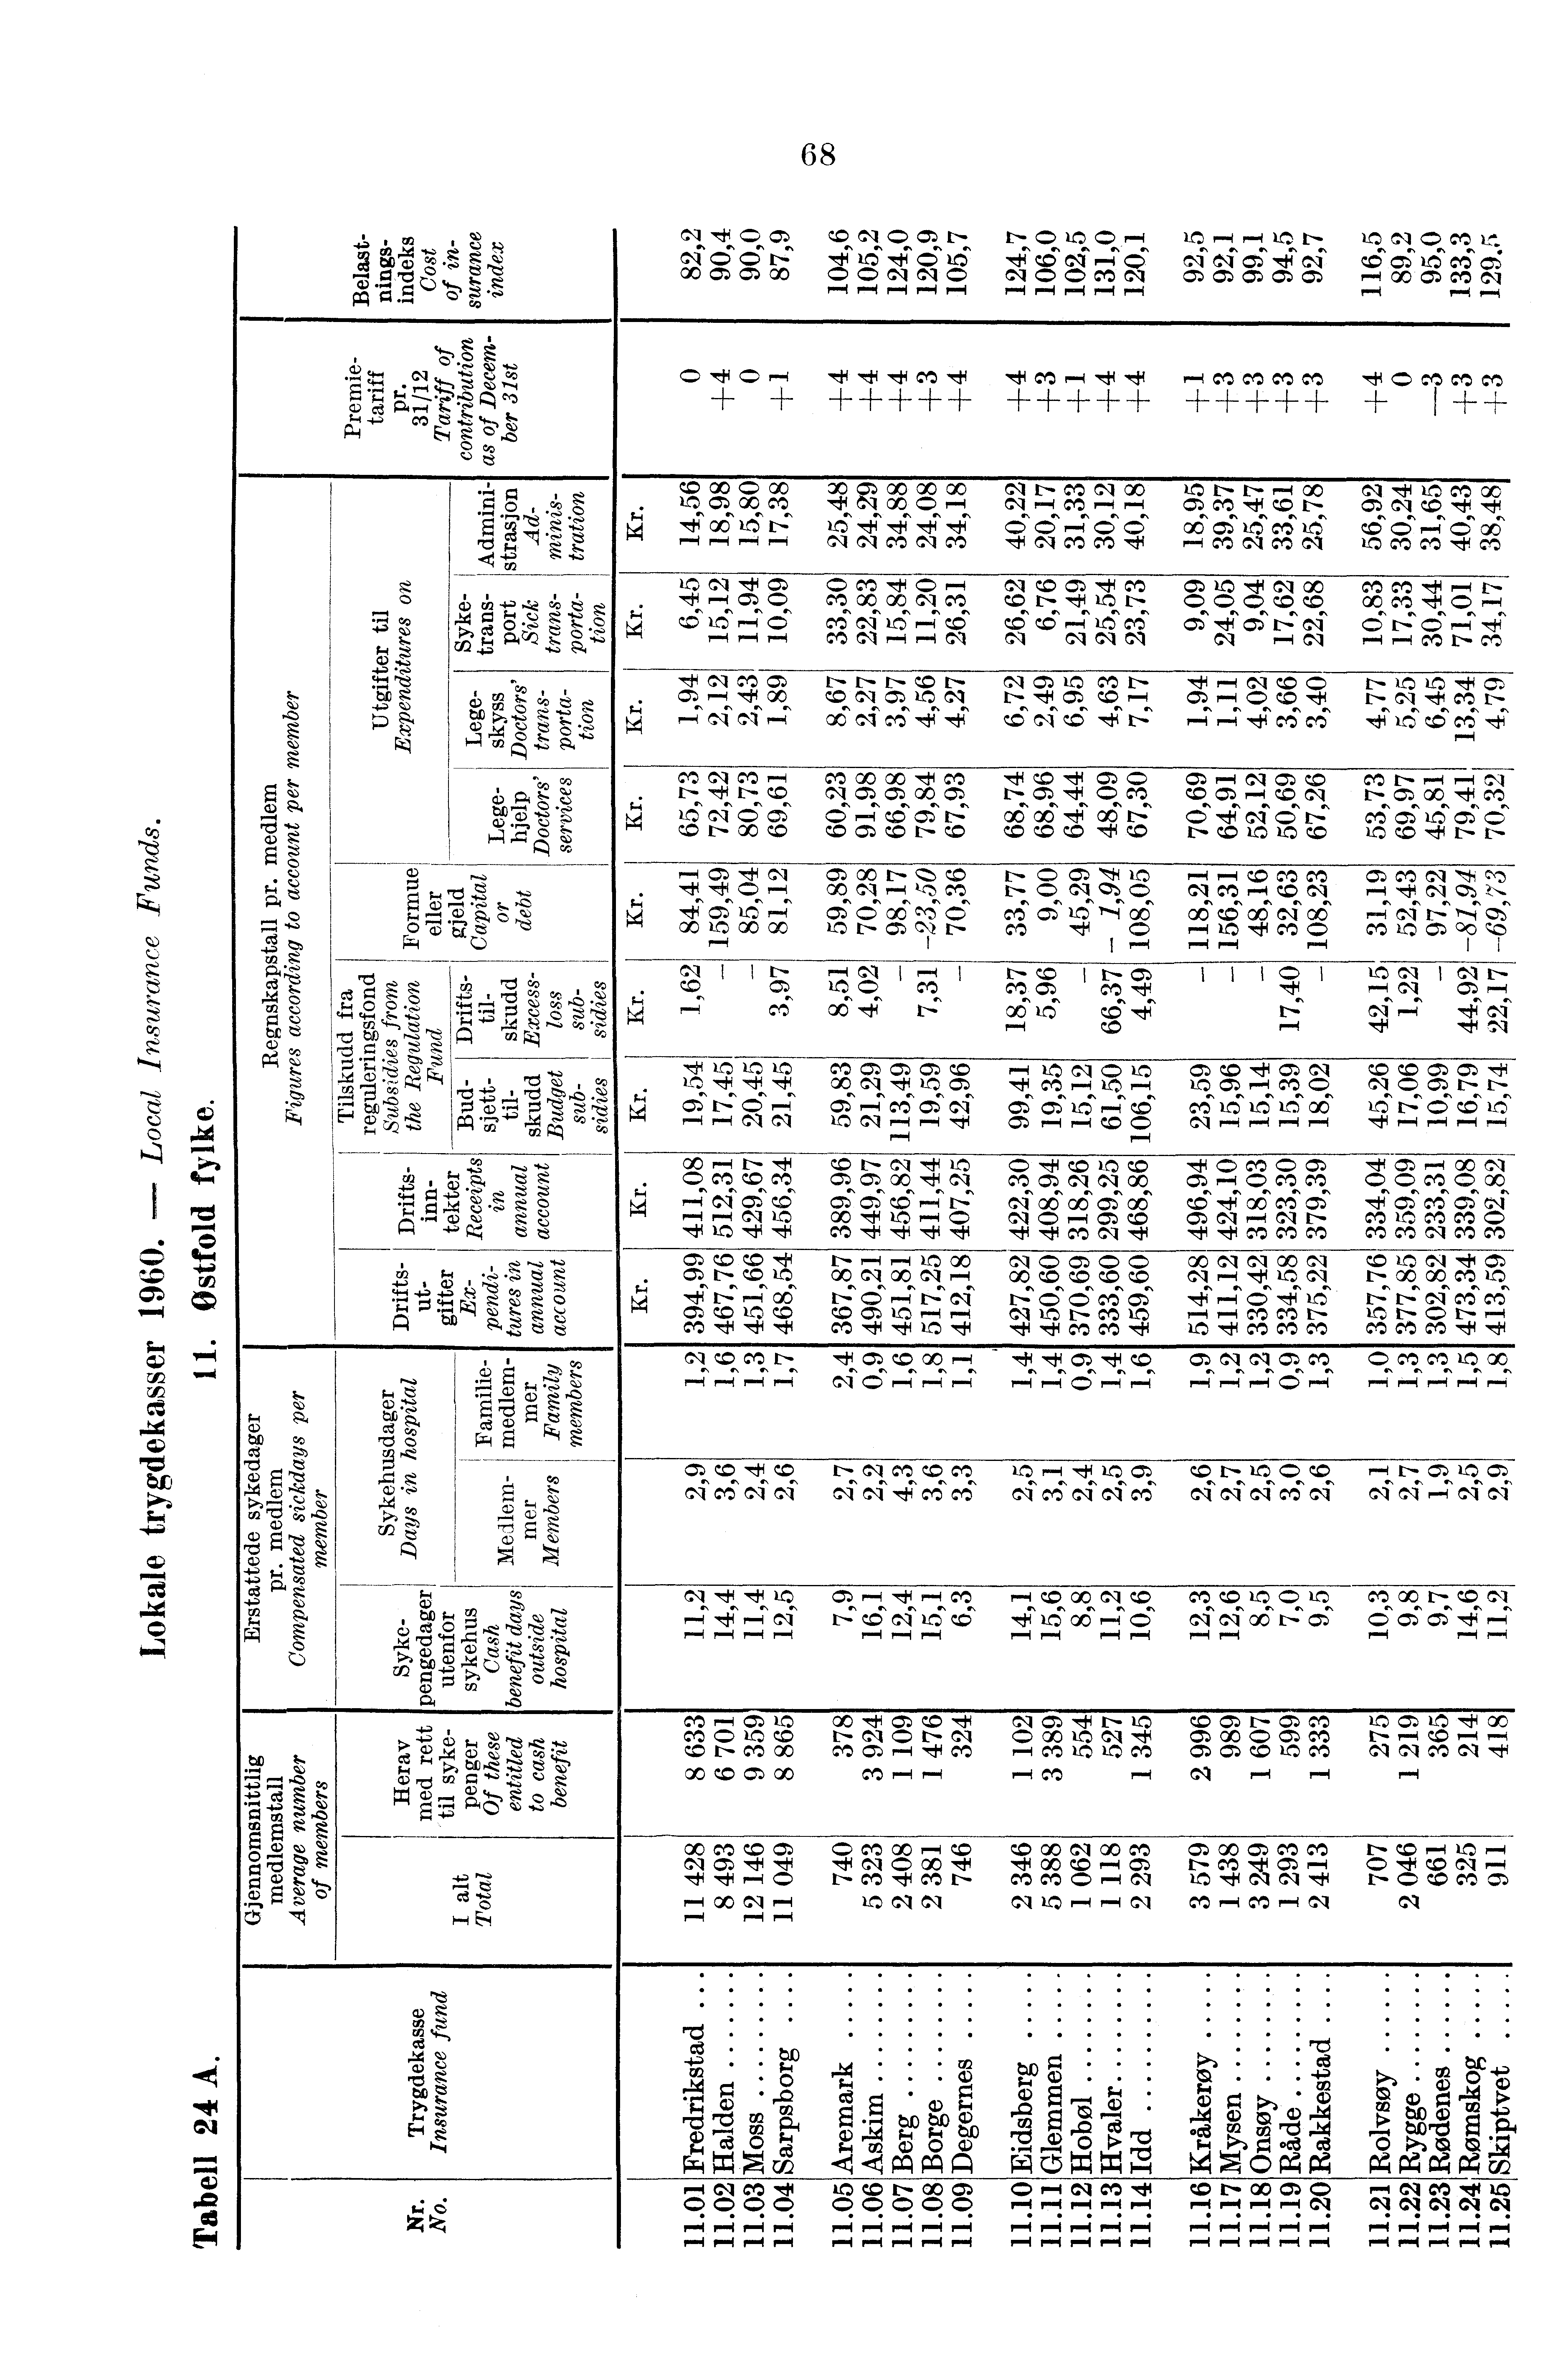 m0.5. '5q ill4t '2 4, g - rw"; 68 Cl 7f.1 (2, CD CC Cl G> Gt N t- G> C>,, 41) N it: 4c.